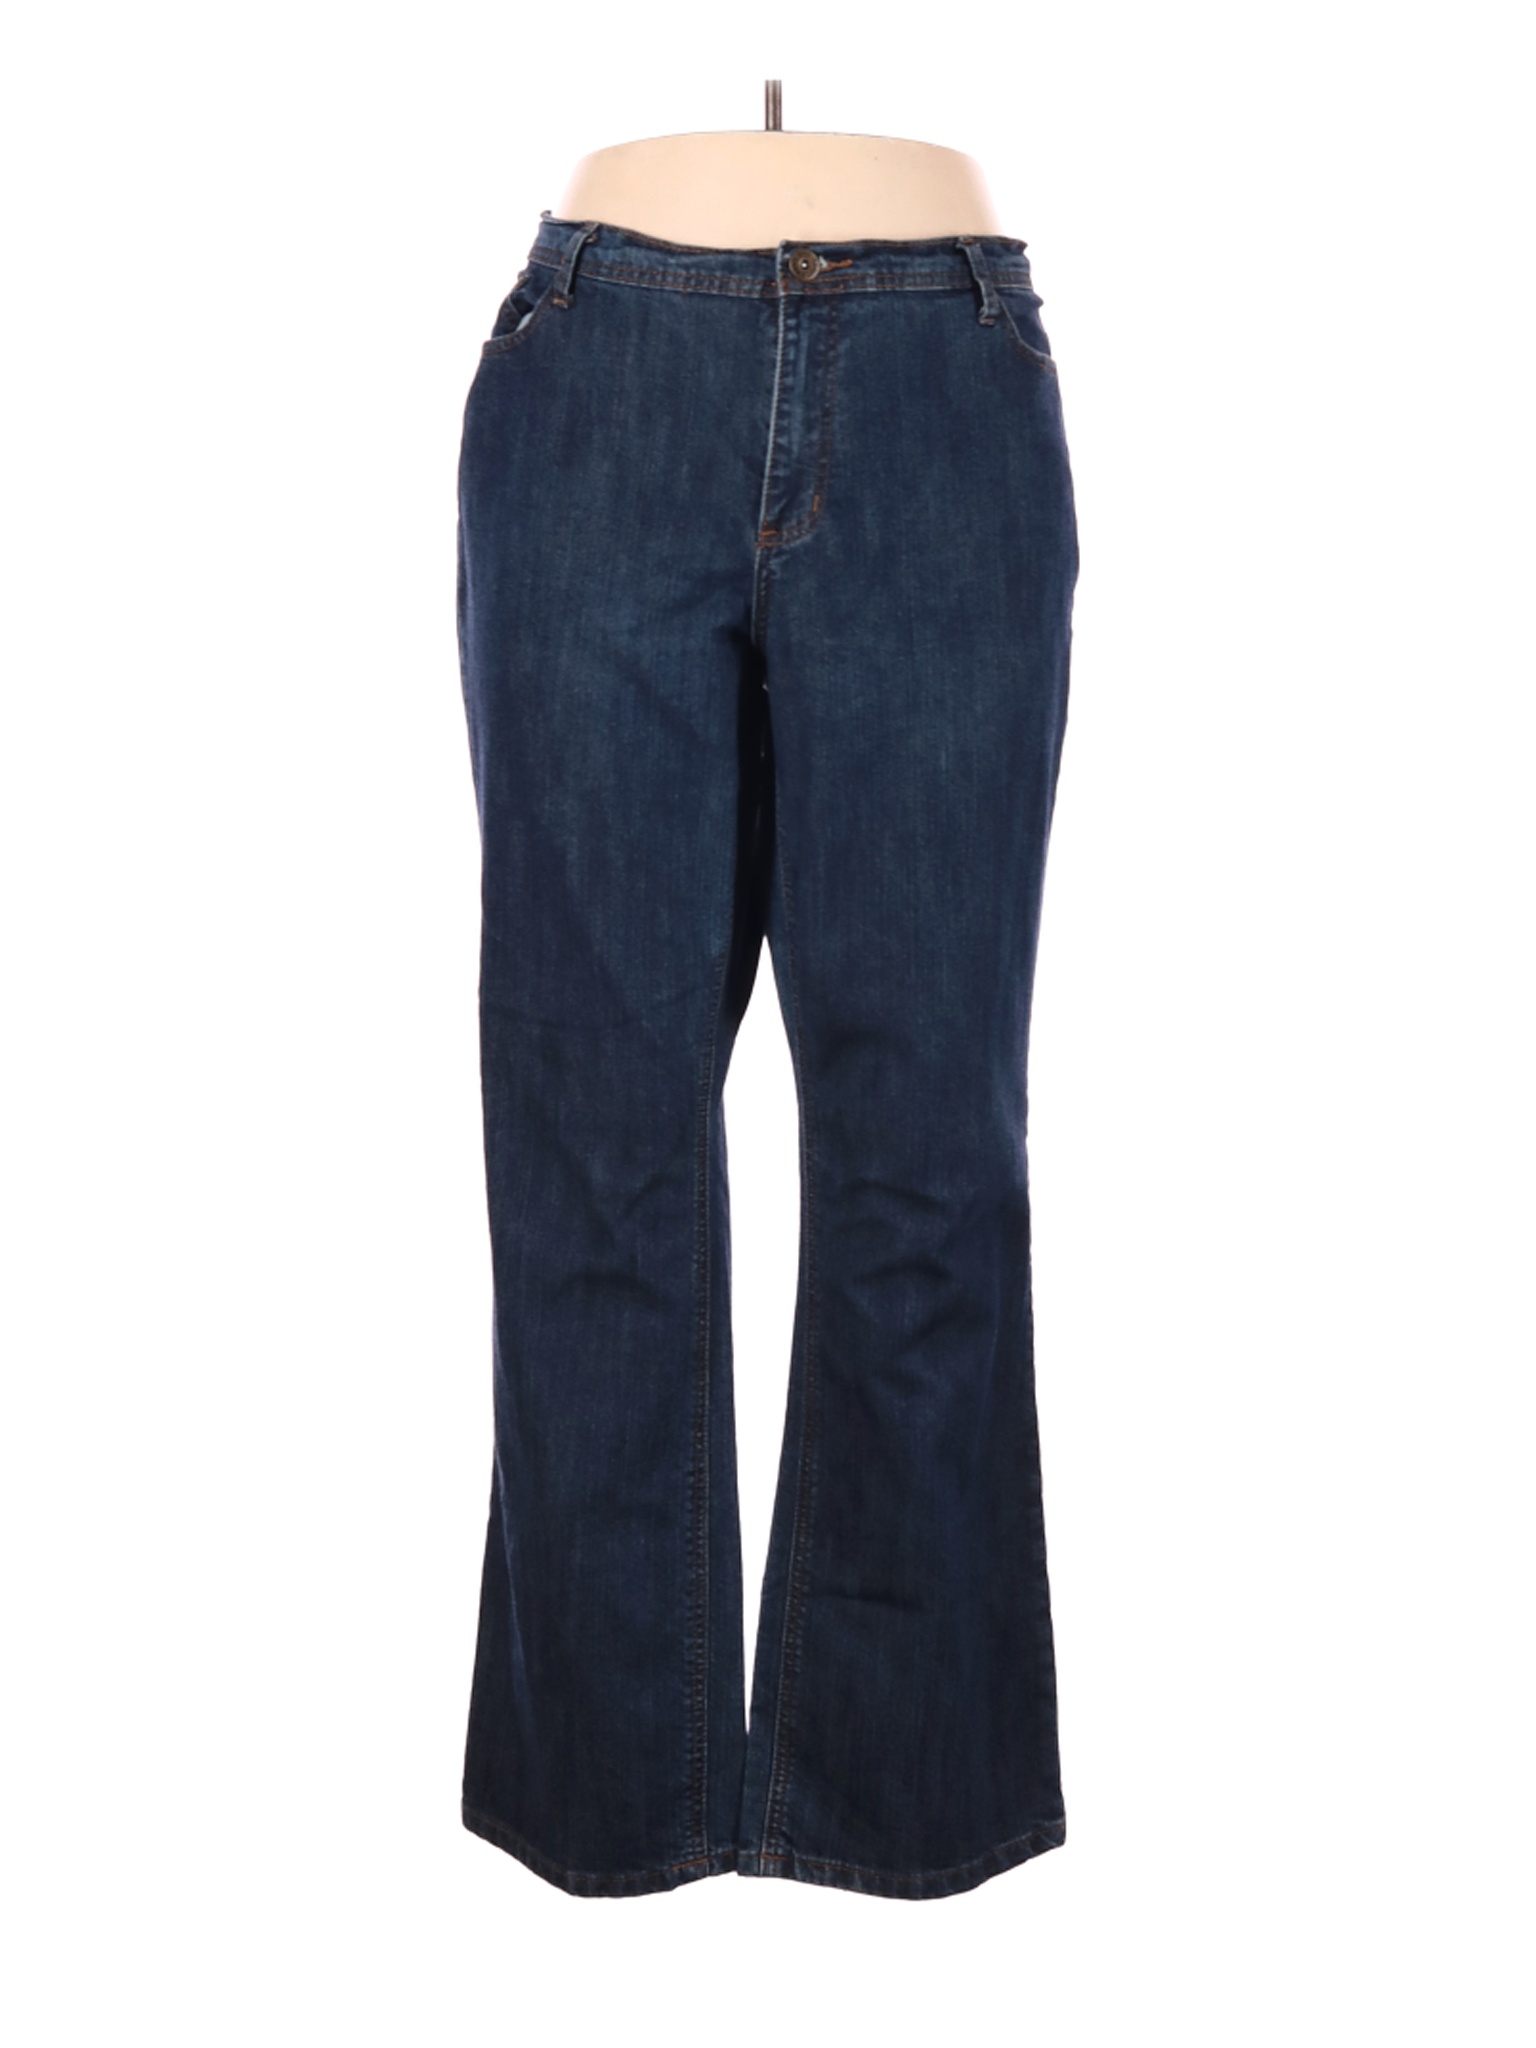 Ashley Stewart Women Blue Jeans 18 Plus | eBay